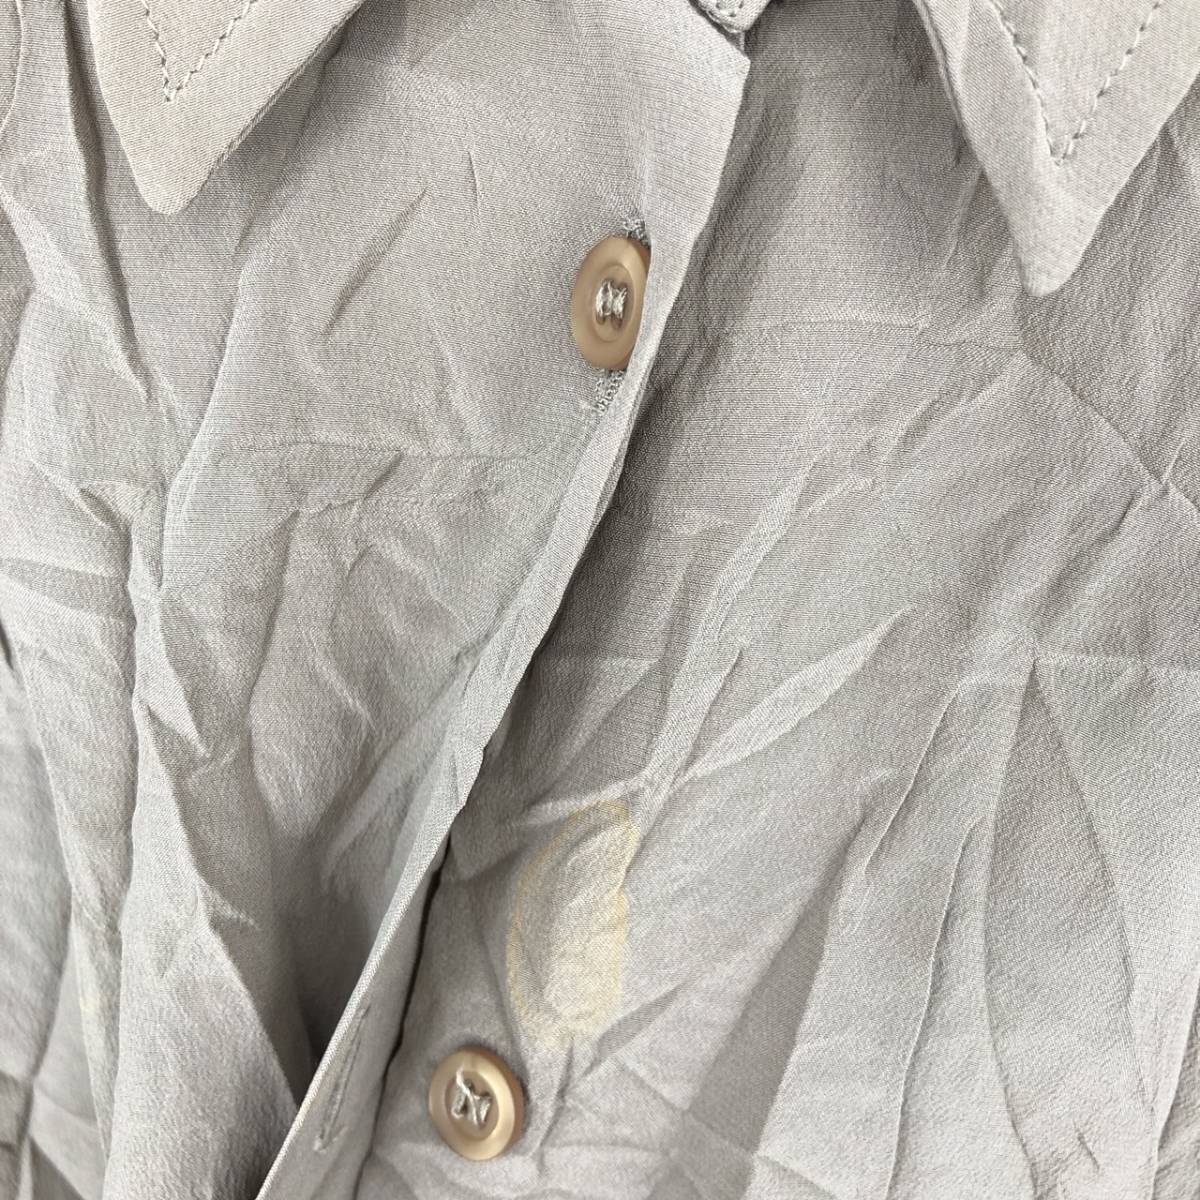 EMPORIO ARMANI Emporio Armani рубашка с длинным рукавом серый ju длинный рукав повторное использование ultralto sh0231